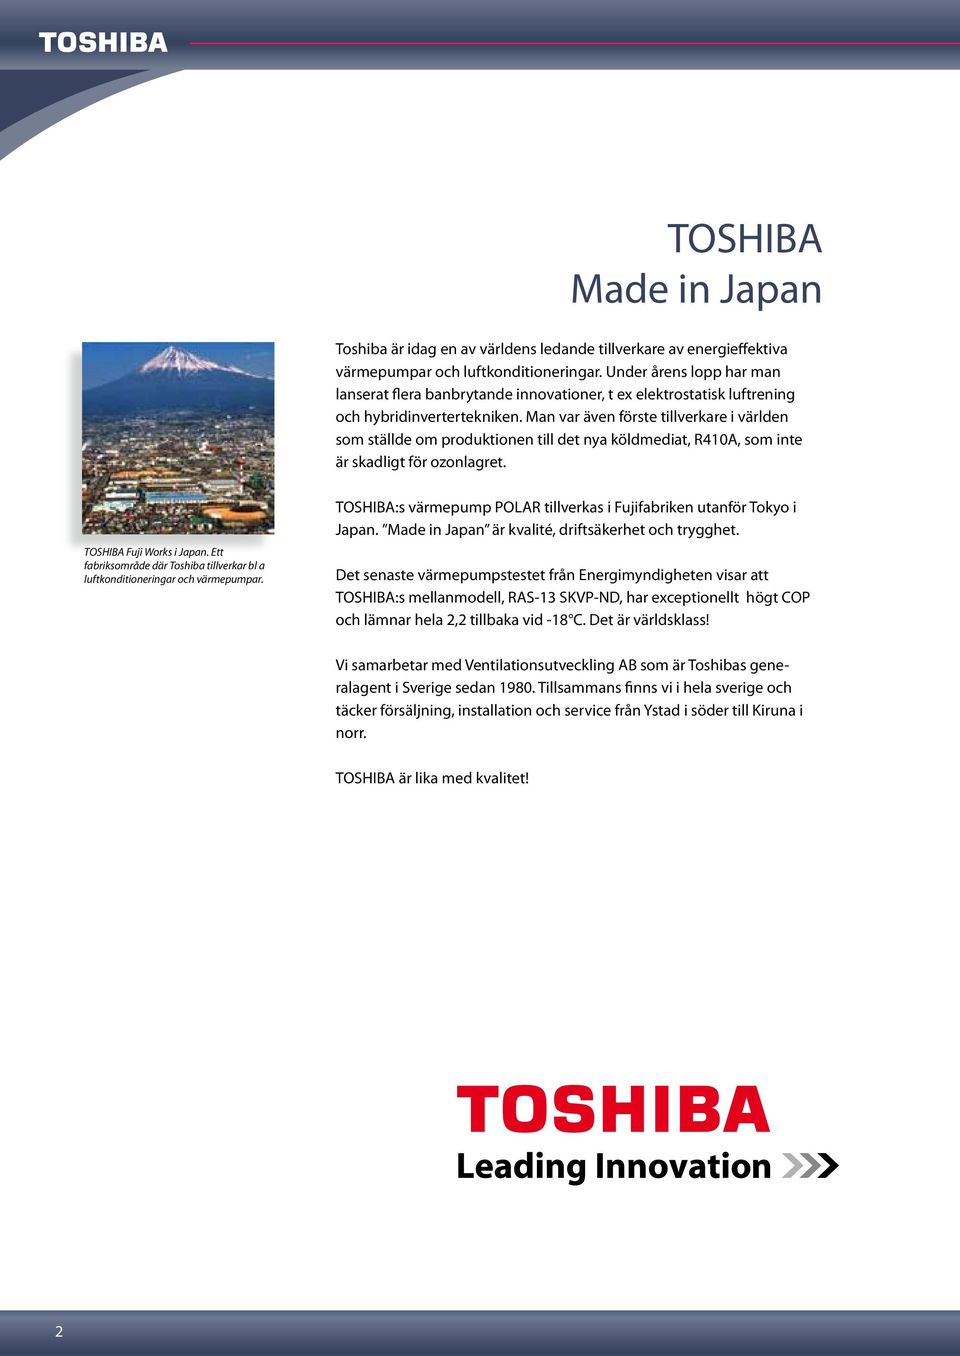 Man var även förste tillverkare i världen som ställde om produktionen till det nya köldmediat, R410A, som inte är skadligt för ozonlagret. TOSHIBA Fuji Works i Japan.